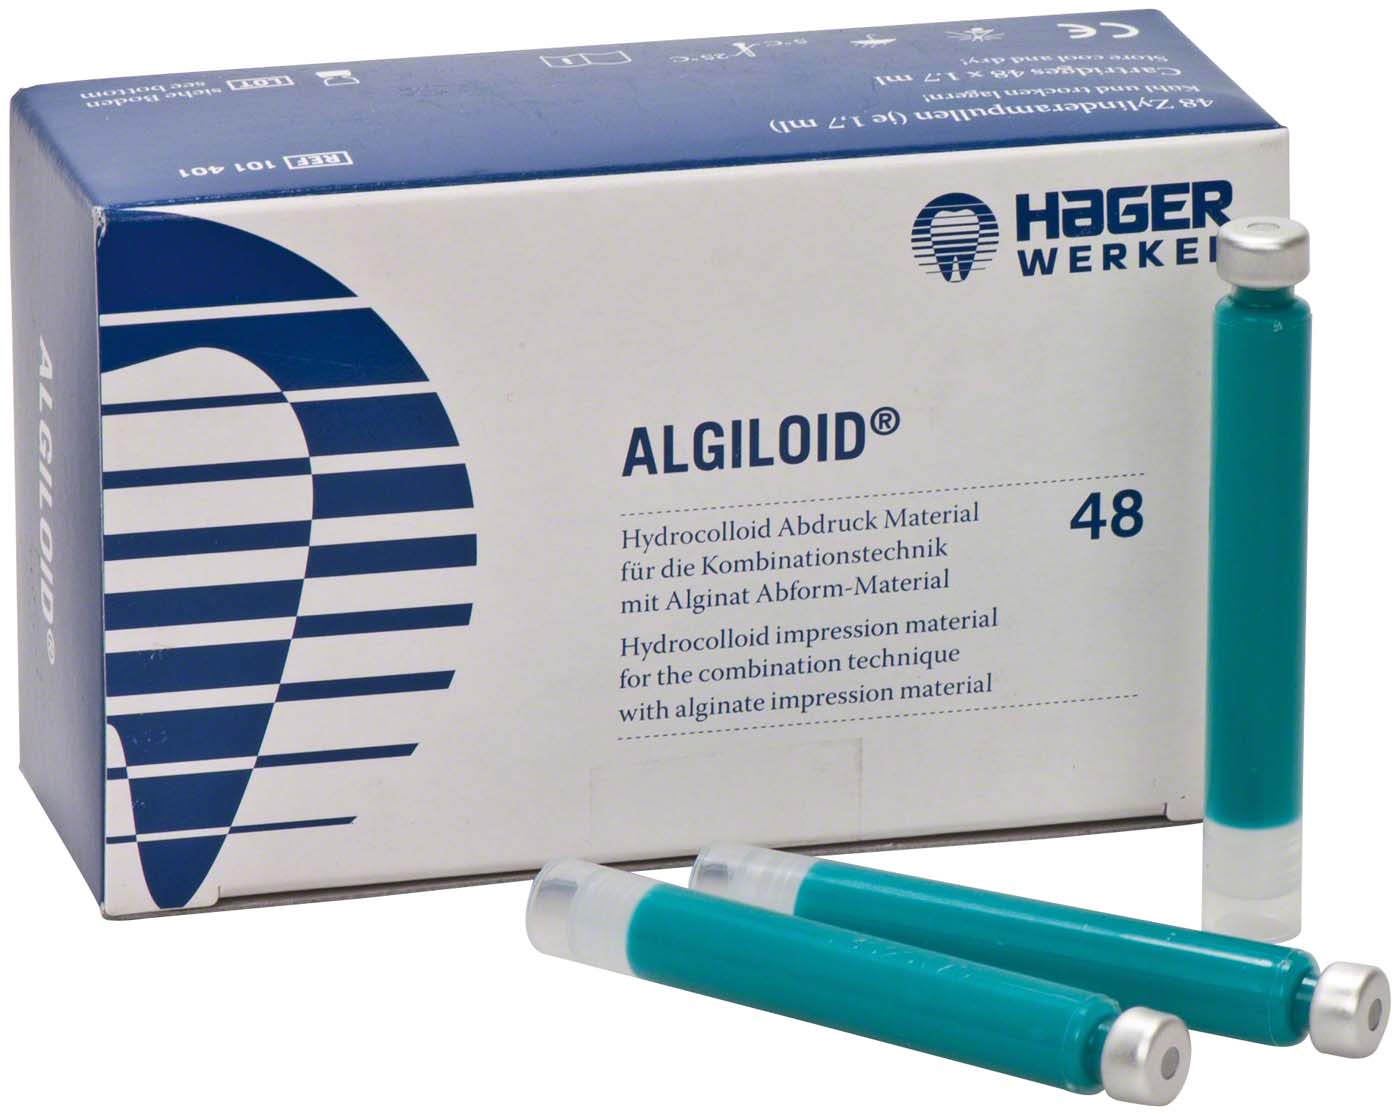 ALGILOID® Hager &amp; Werken